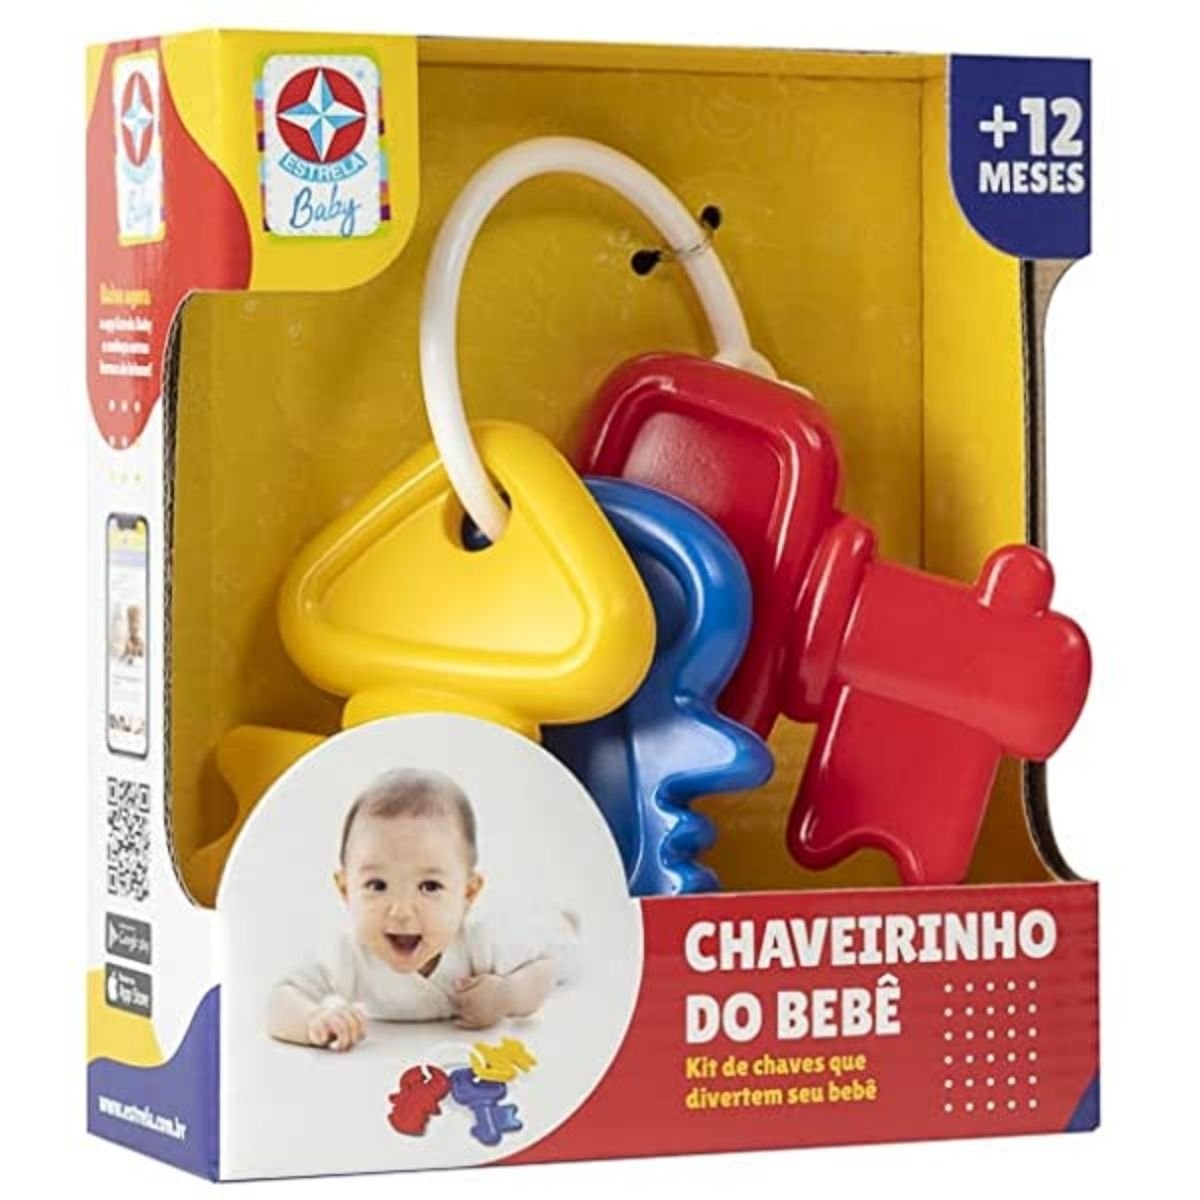 Chaveirinho do Bebe ESTRELA1101400026 Chocalho Mordedor KIT de Chaves Coloridas Brinquedo Didático - 3